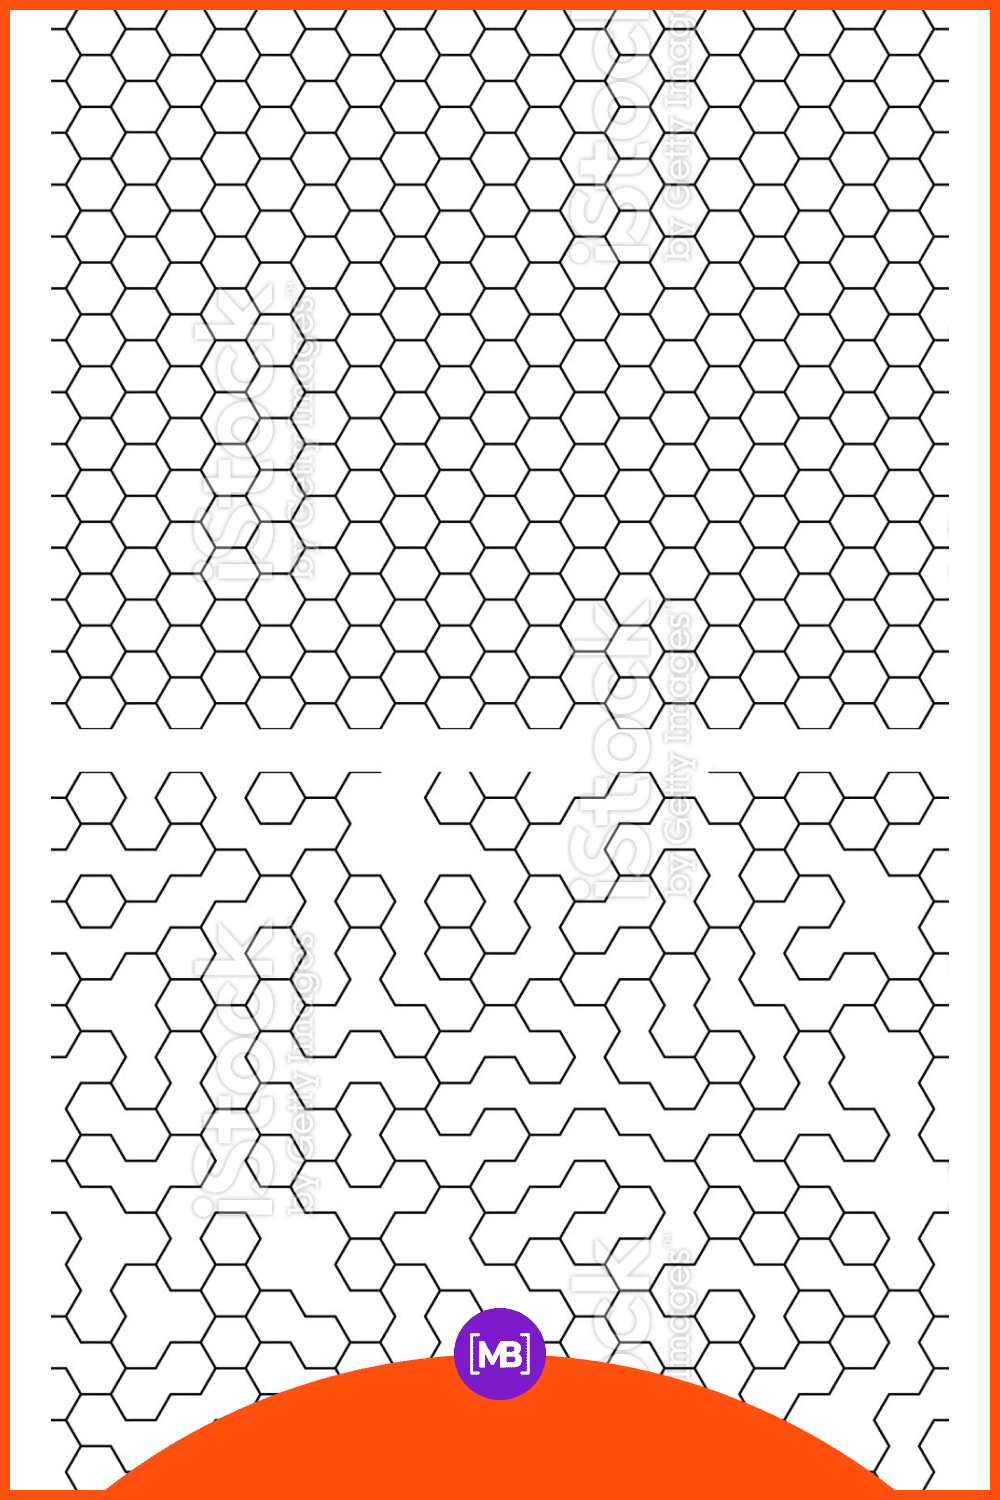 Hexagon like a maze.